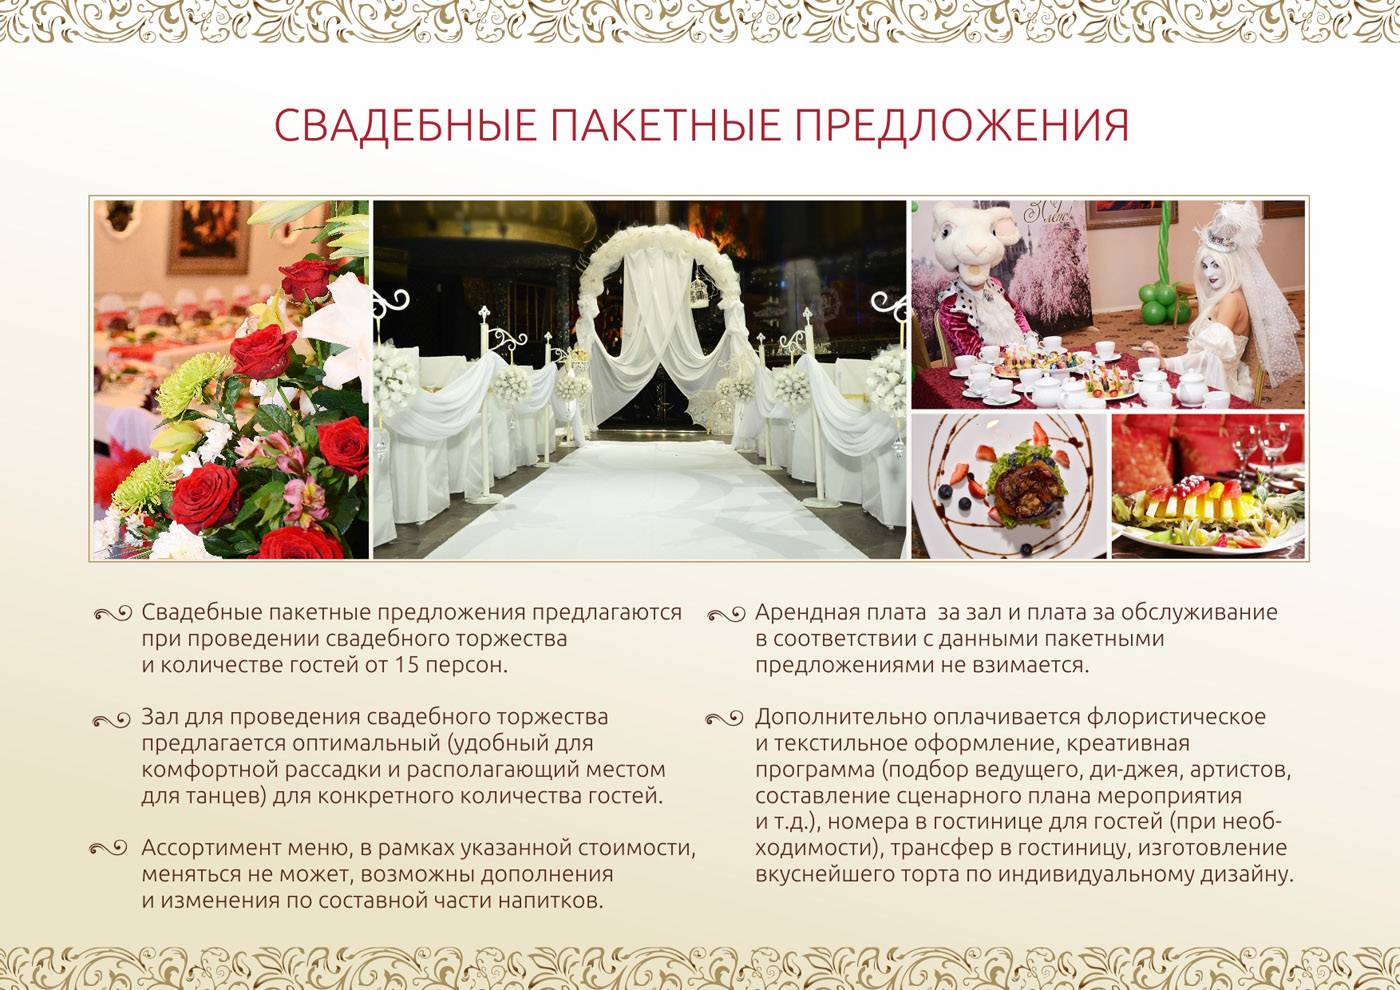 Свадьба в европейском стиле, или как позаимствовать хорошие традиции праздника
свадьба в европейском стиле, или как позаимствовать хорошие традиции праздника